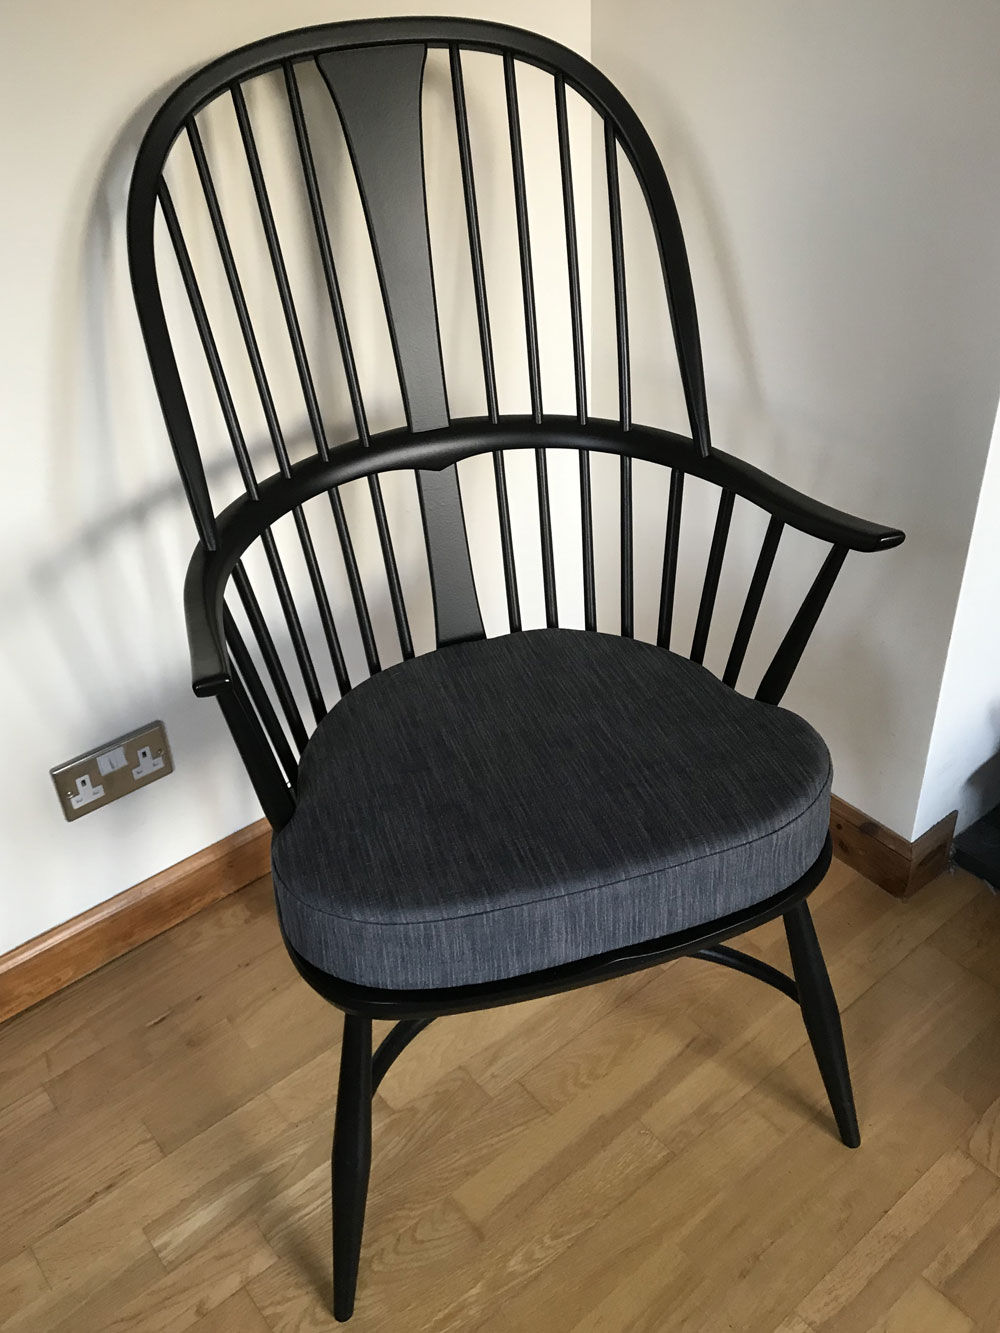 New Ercol chair cushion